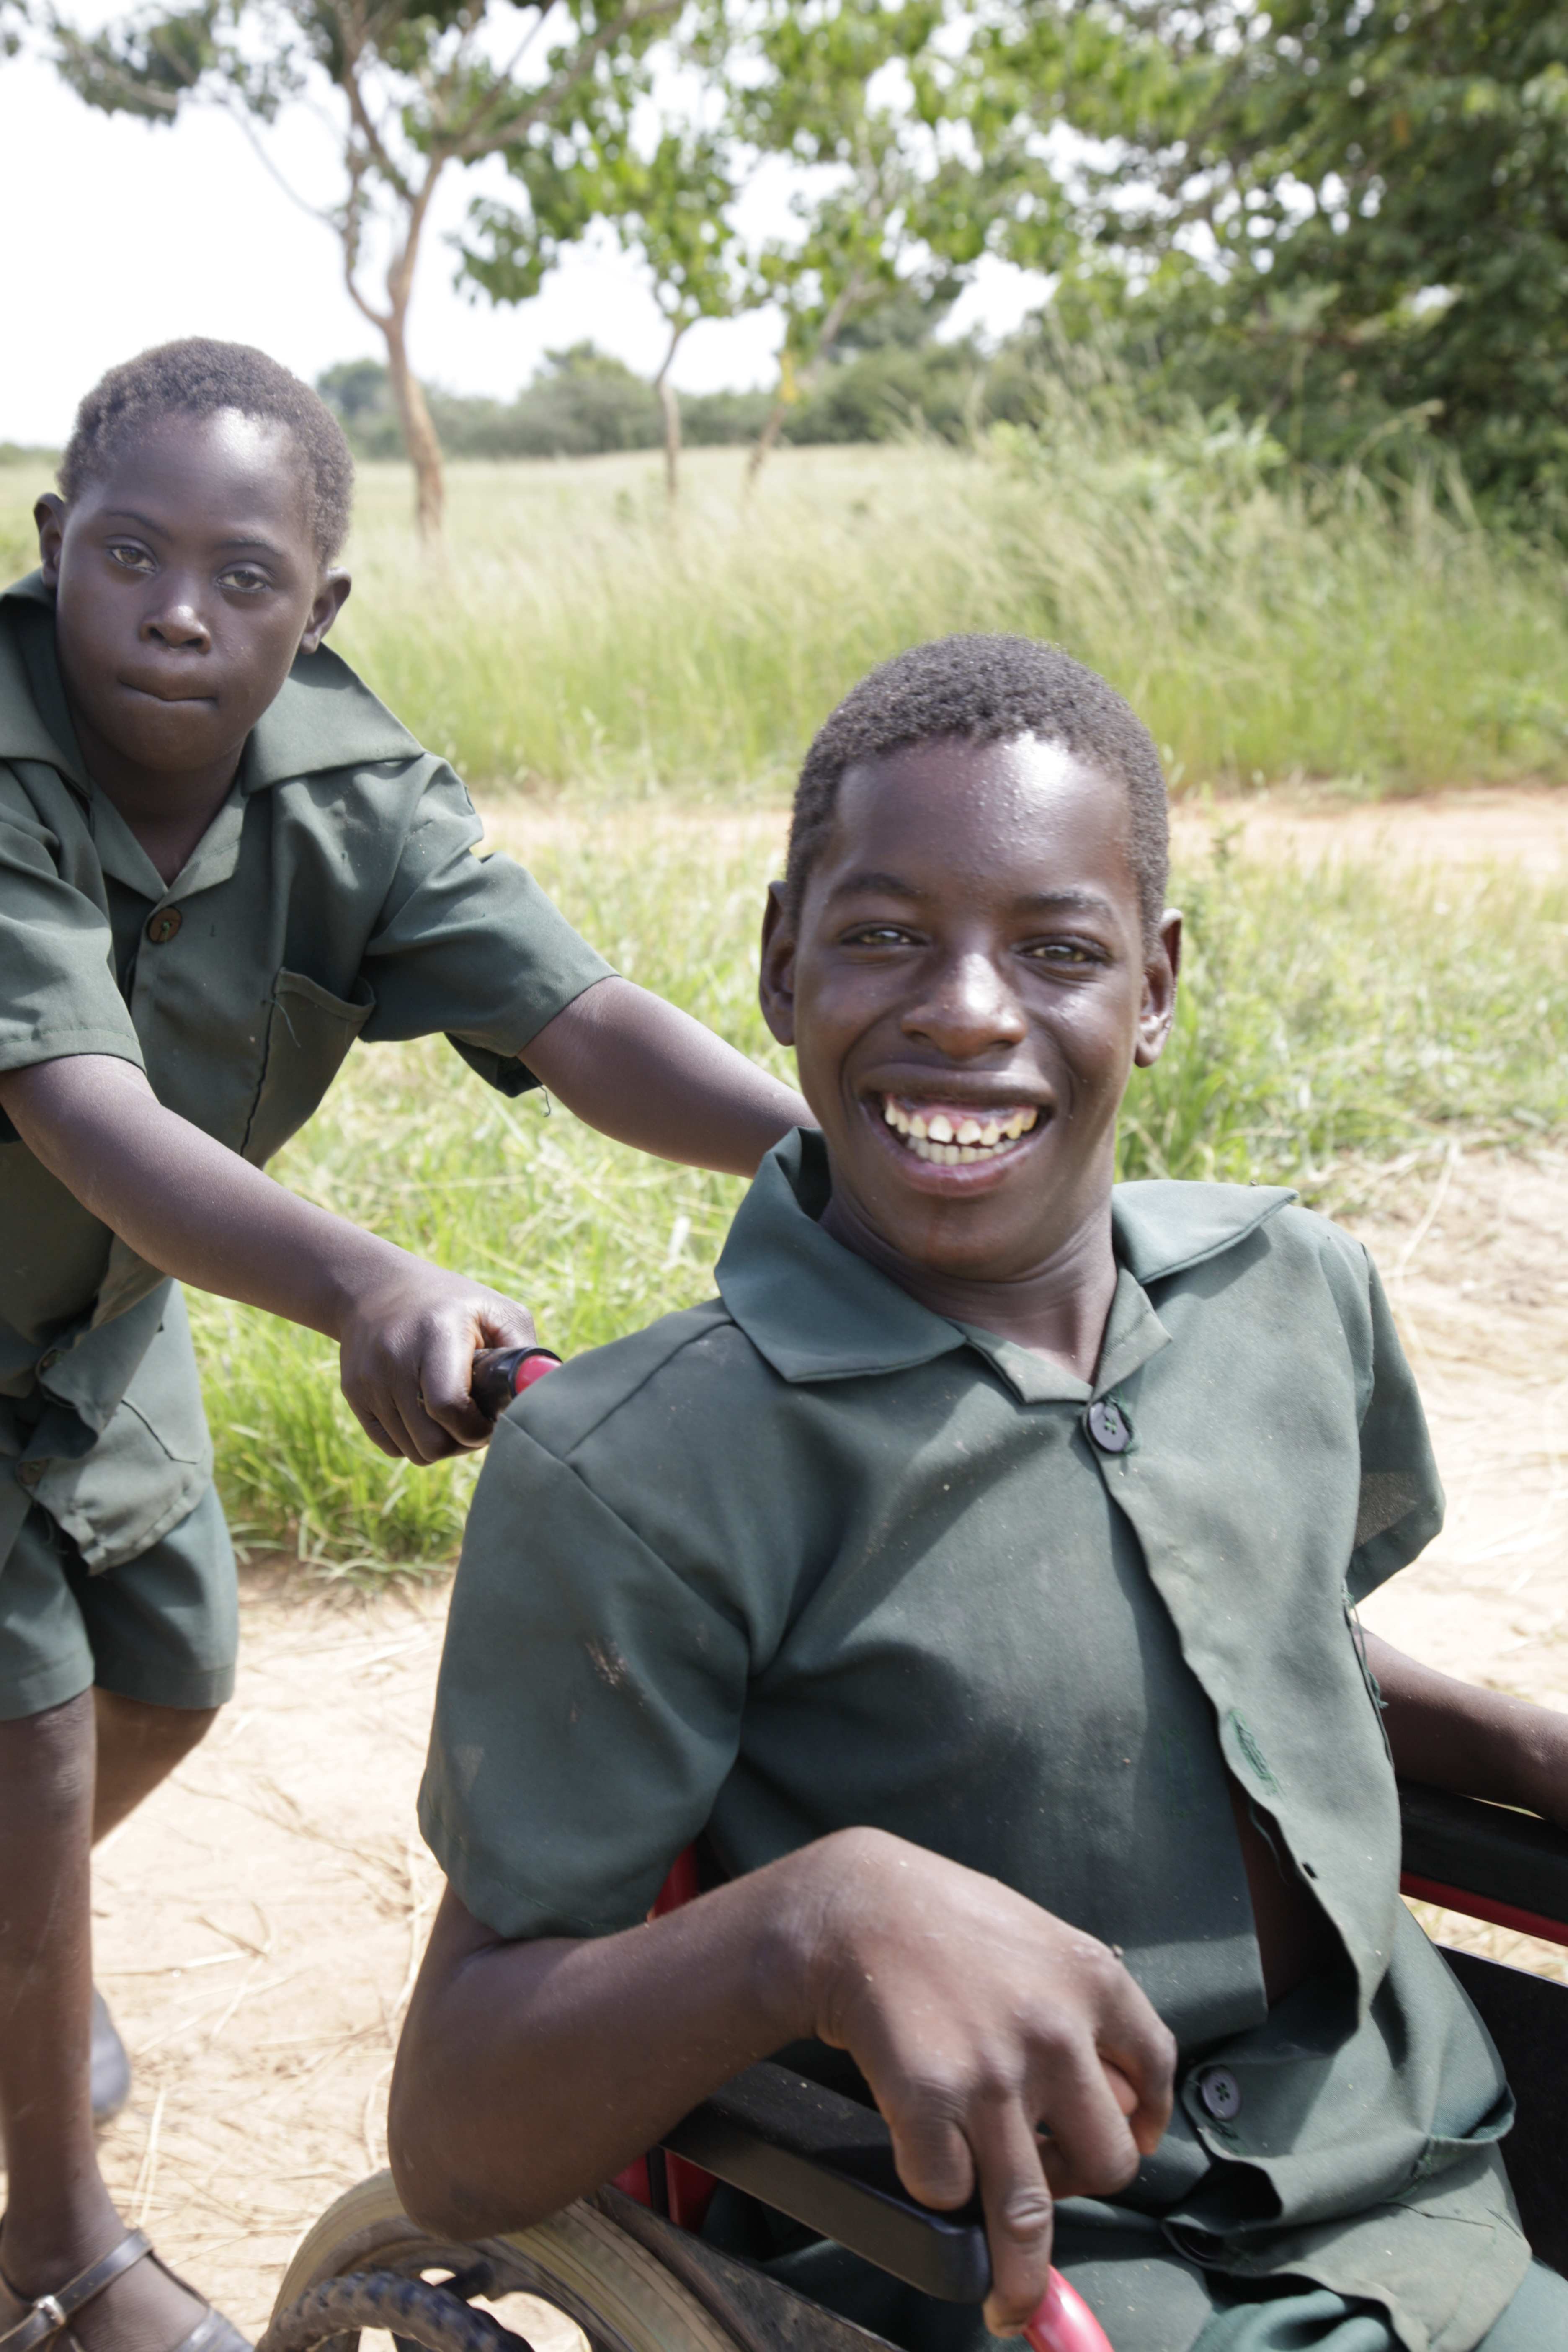 Junge aus Sambia schiebt anderen Jungen im Rollstuhl